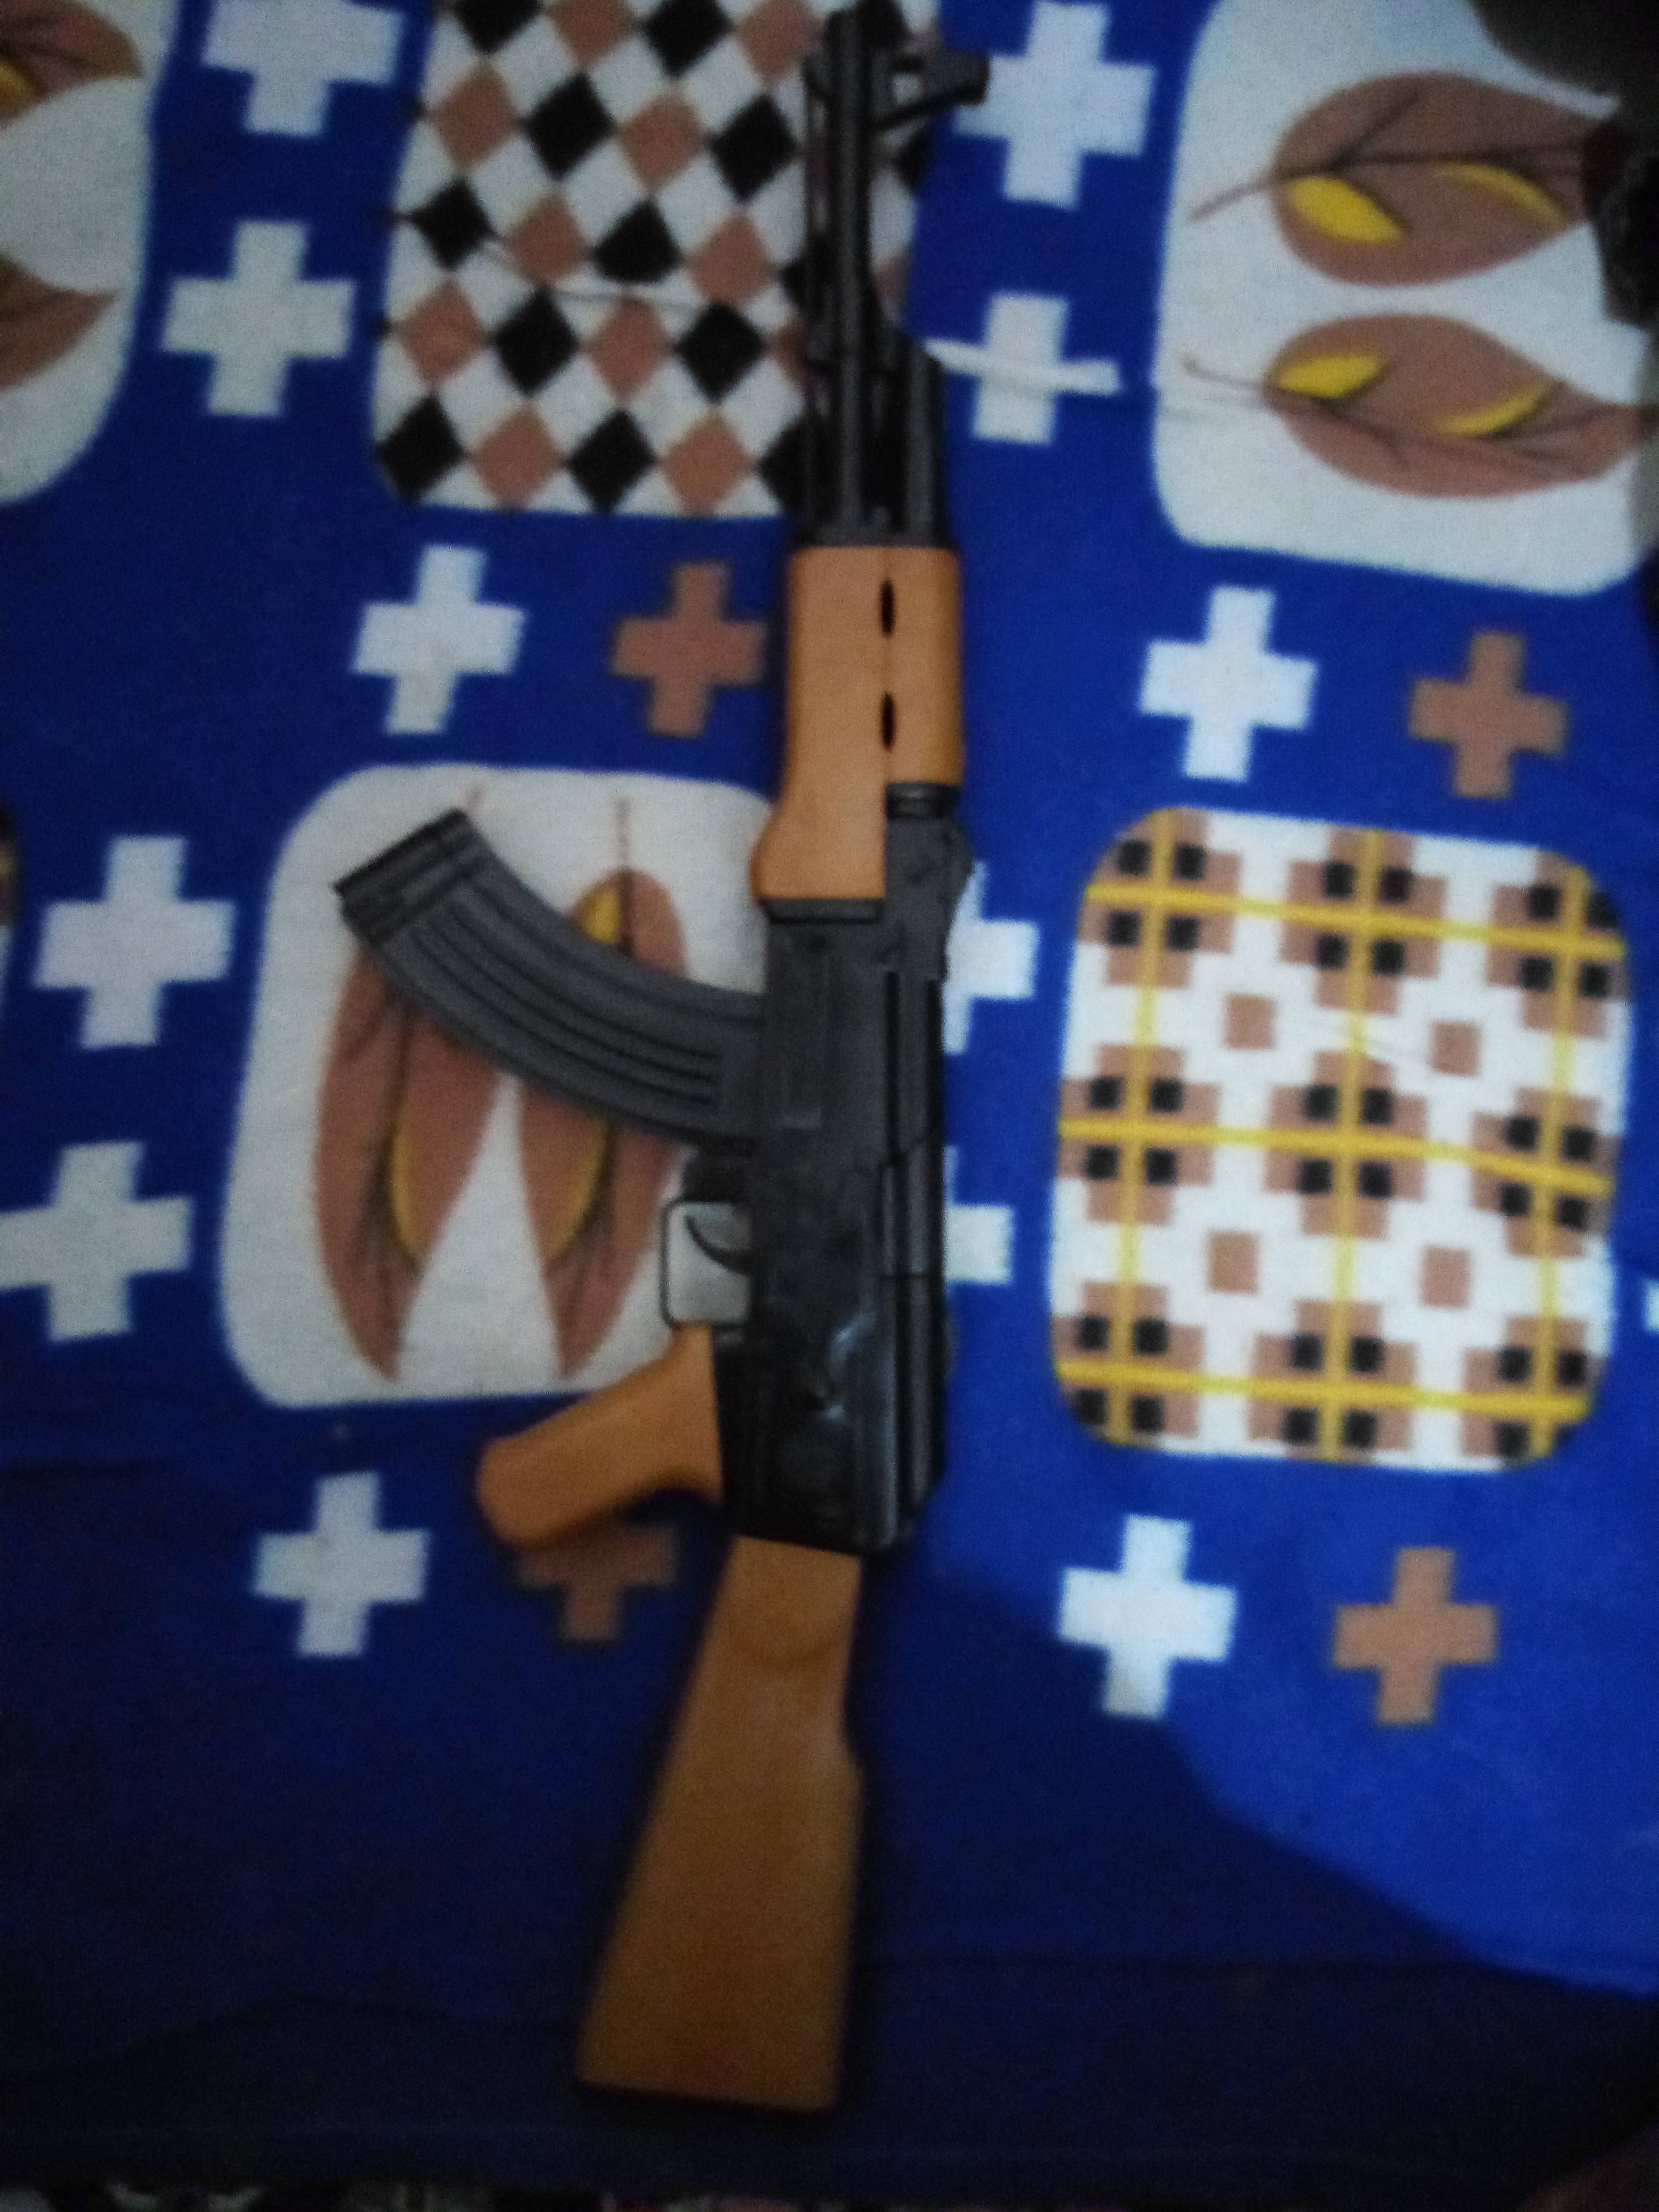 ست اسباب بازی تفنگ طرح کلاشینکف مدل AK-47